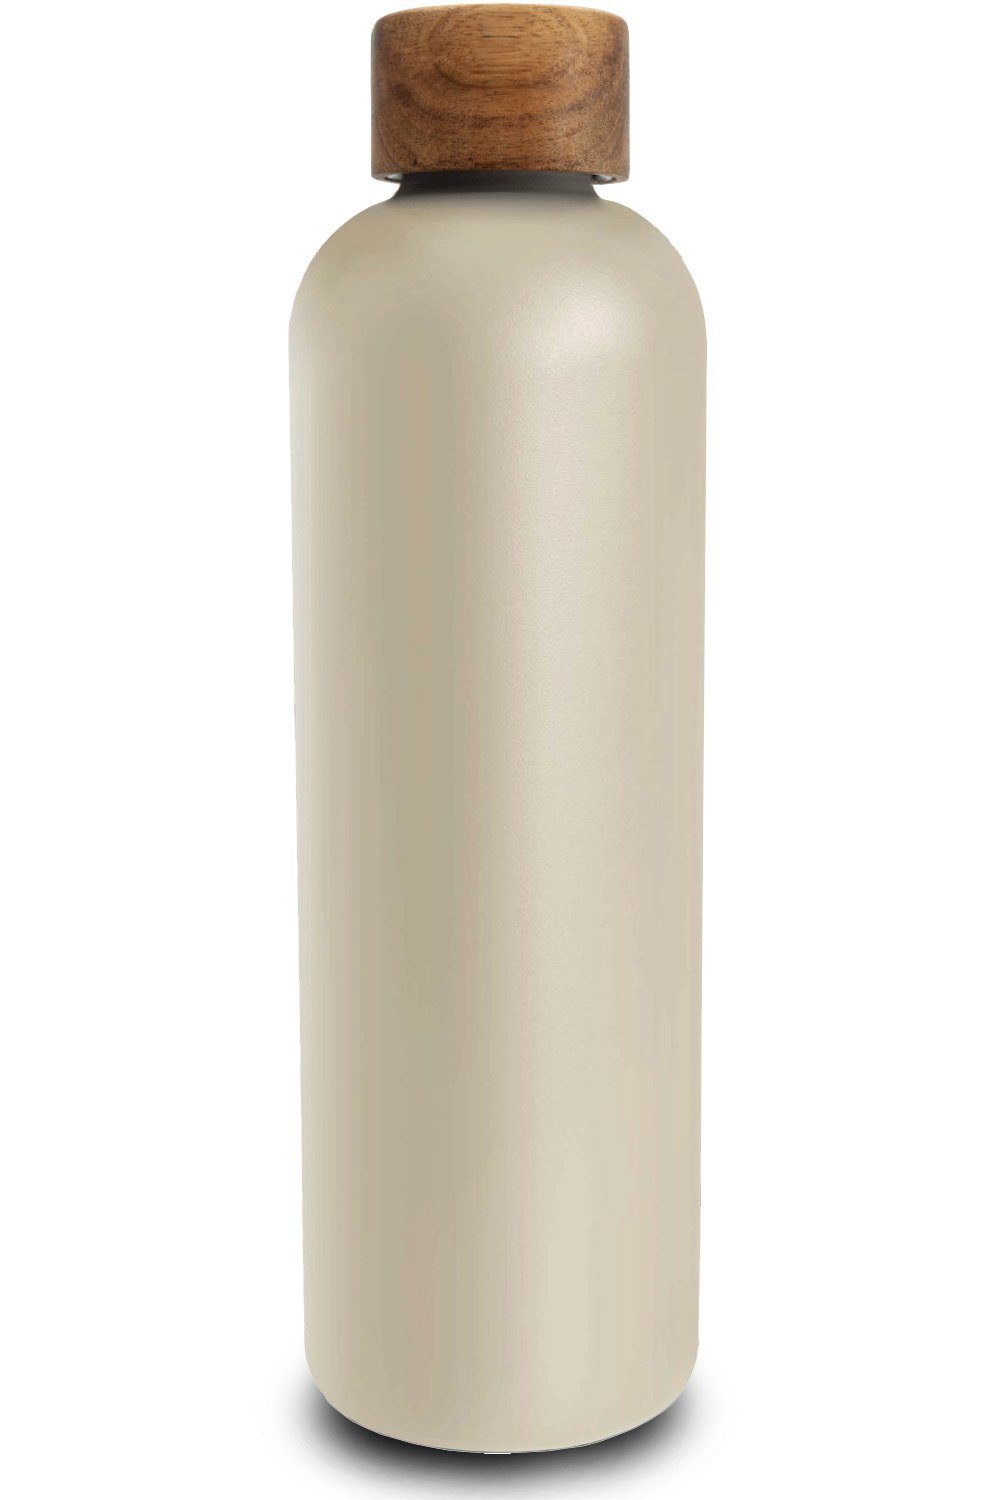 TRENDY AND NEW Trinkflasche T&N Edelstahl Trinkflasche 1 Liter - Wood Edition, Thermosflasche 1l für Büro, auslaufsichere, robuste, isolierte Wasserflasche 1000ml für Kohlensäure, Thermoskanne für unterwegs, Isolierflasche für Tee & Kaffee, hält 14h HEISS 29h EISKALT, Flasche für Sprudel-Wasser Mud Grey